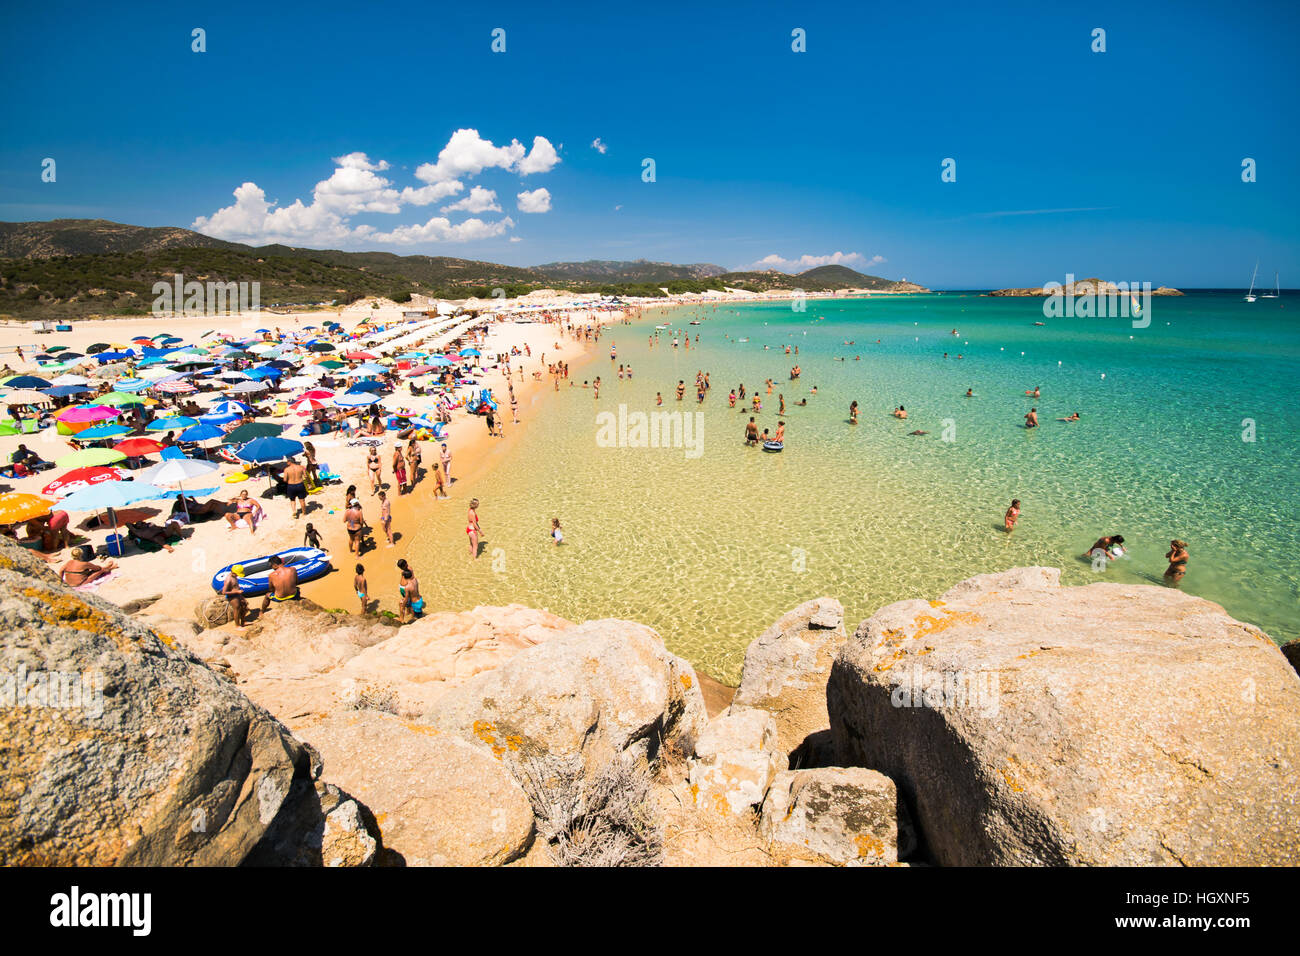 Chia, Italien - 18. August 2016: Die wunderbare Strände und kristallklares Wasser der Bucht von Chia, Sardinien, Italien. Stockfoto